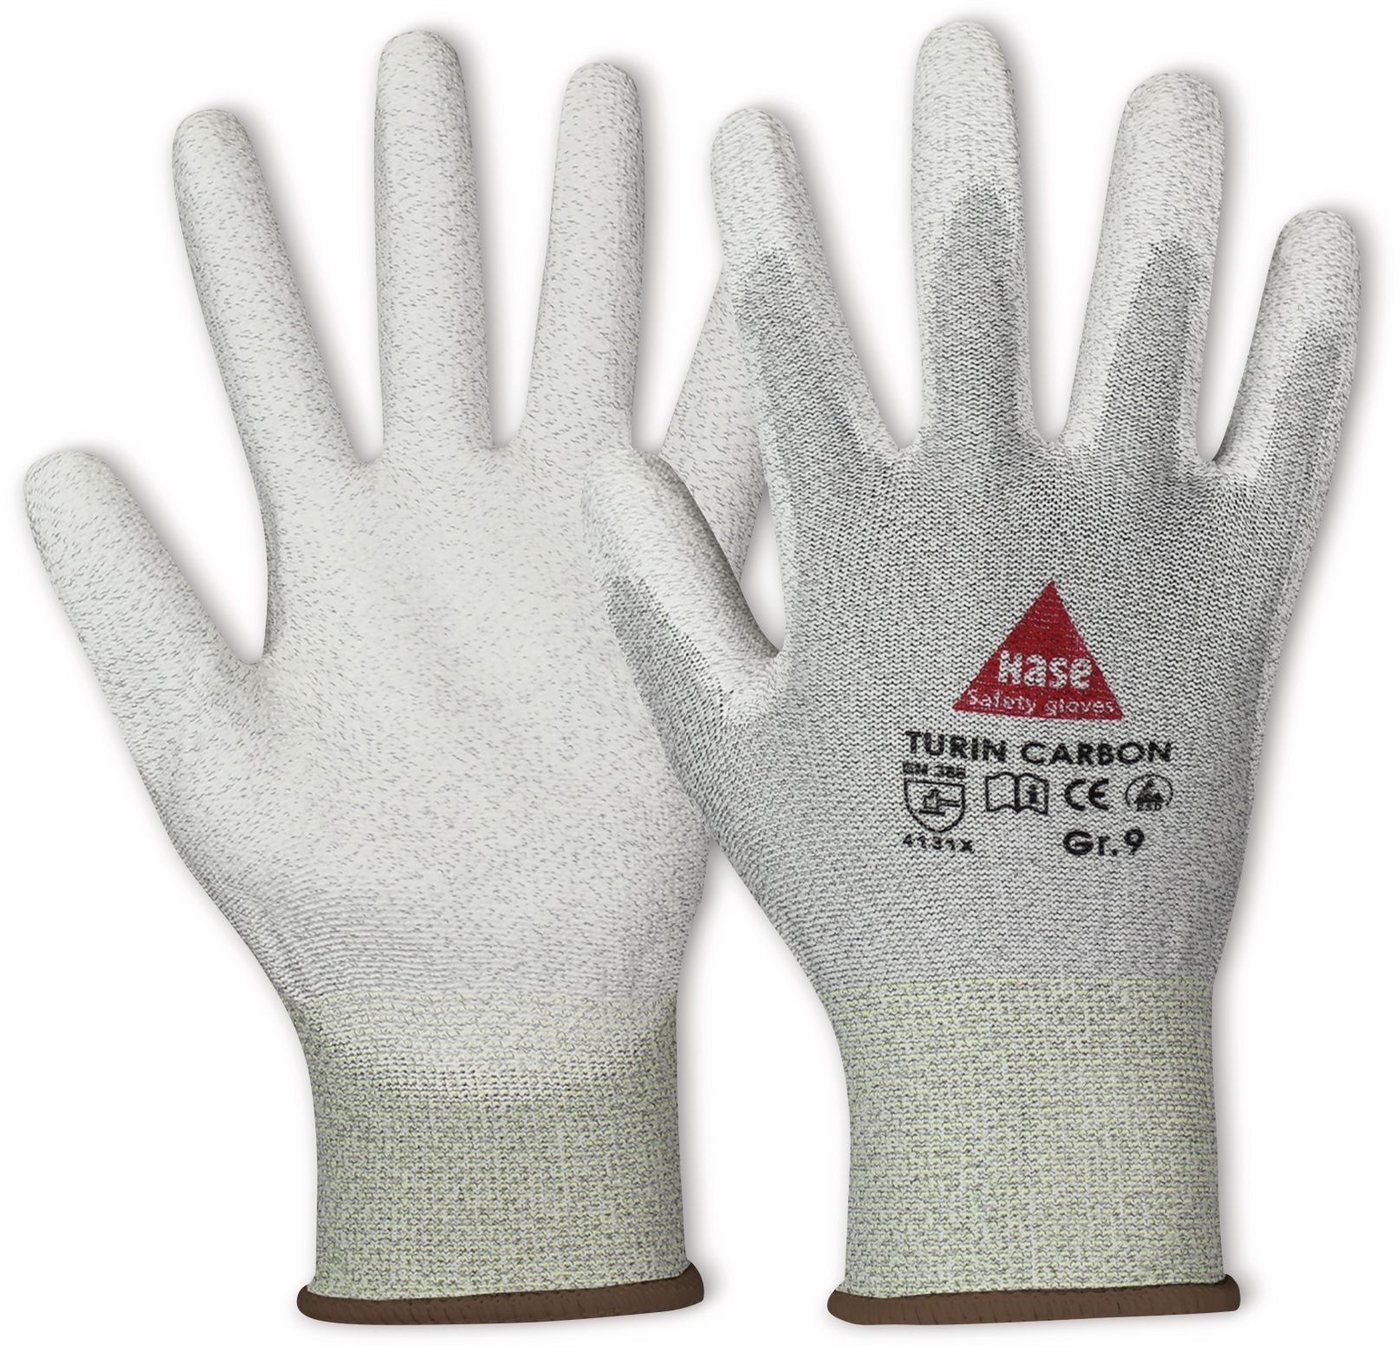 Hase Safety Gloves Arbeitshandschuhe HASE SAFETY GLOVES Montagehandschuh, TURIN CARBON von Hase Safety Gloves